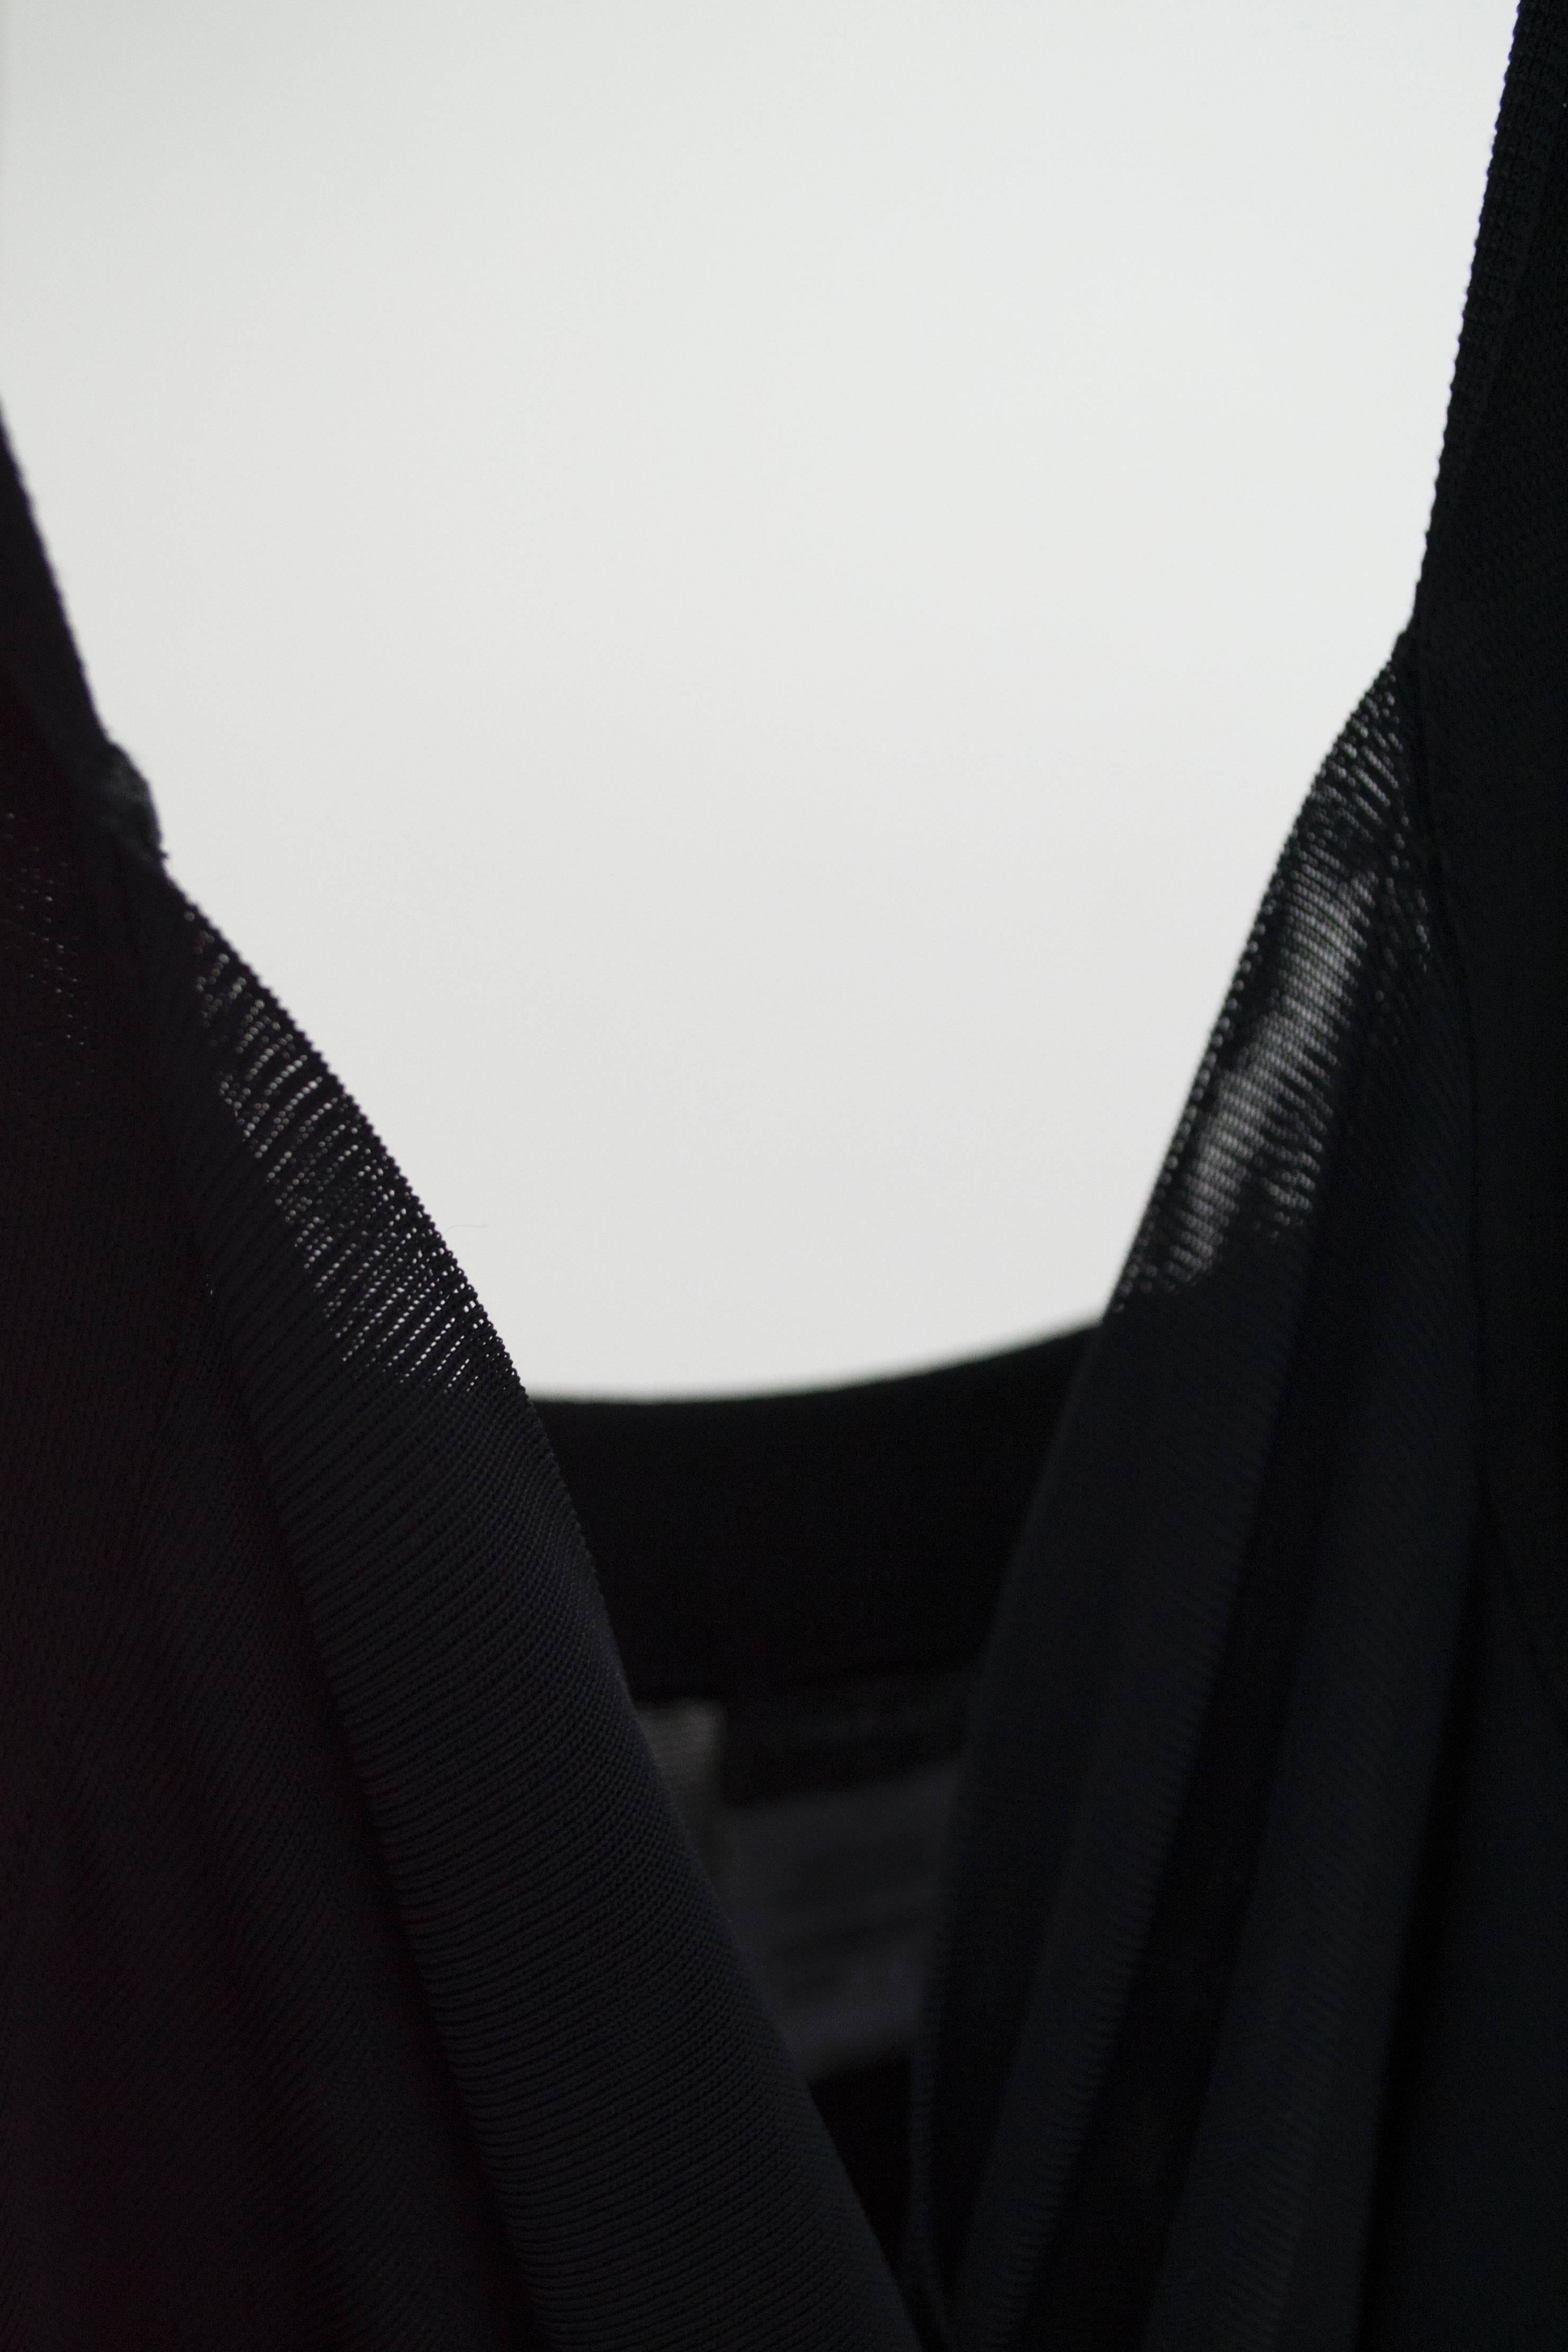 Robe de cocktail Chanel noire en rayonne et élasthanne, taille 42. Détaillée avec des volants en cascade sur le devant et une plaque Chanel en métal au dos. Pas de doublure. Très bon état avec une usure minimale. 